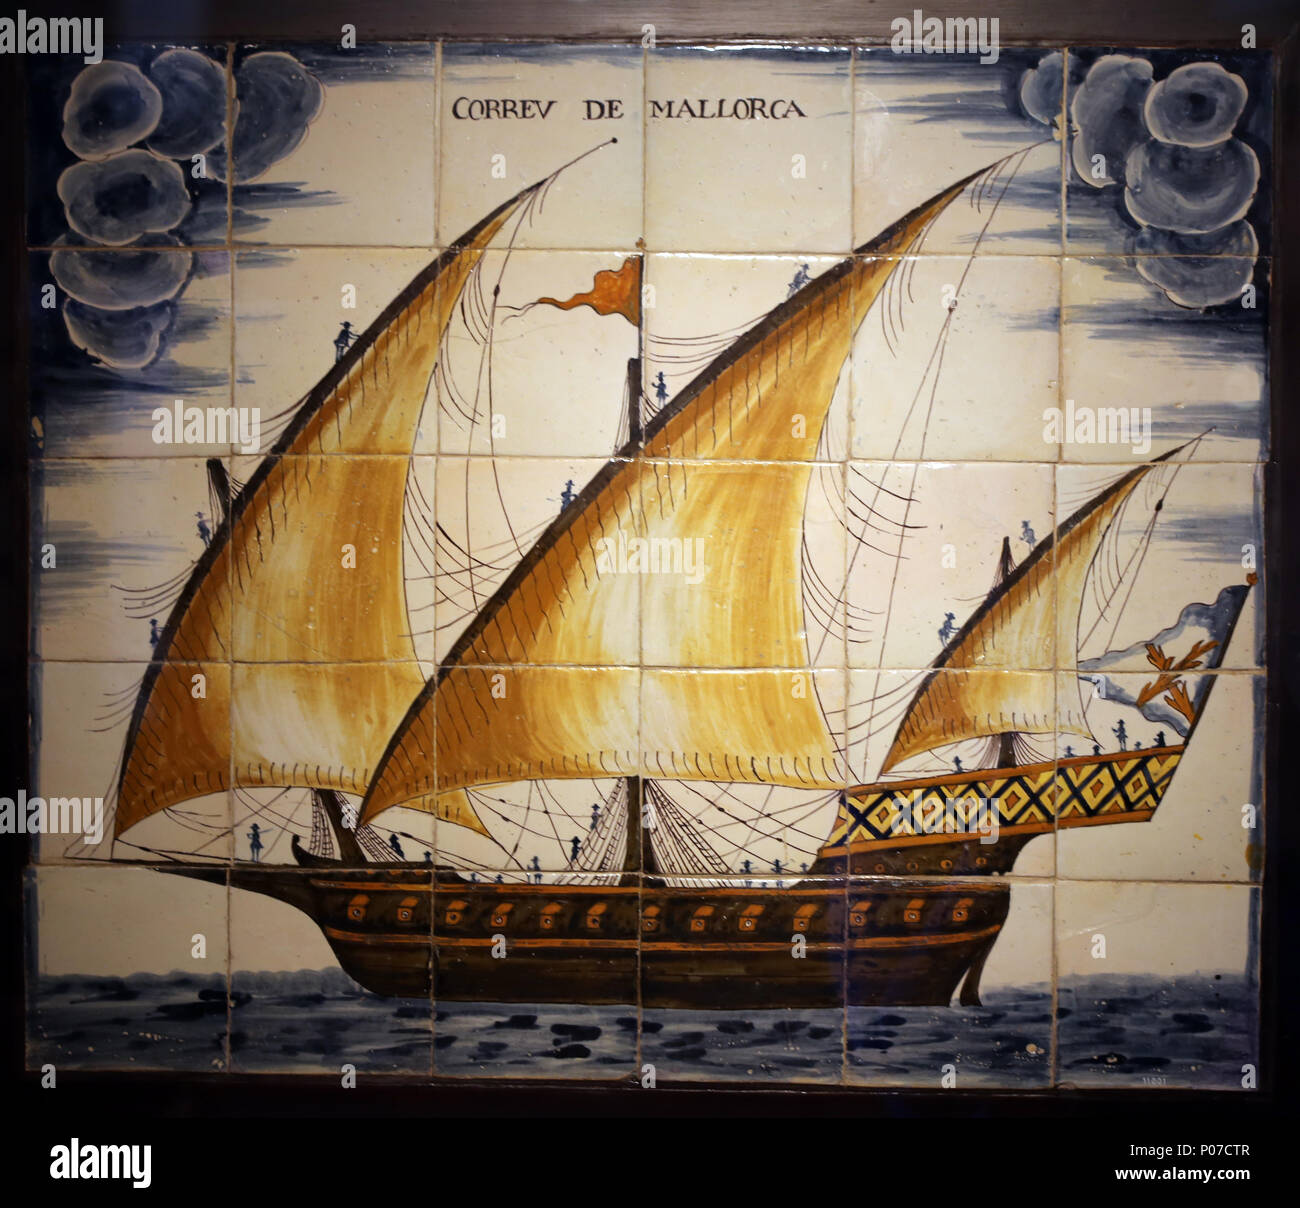 Keramik Panel der Darstellung der Mail von Mallorca. Xebec Typ Schiff, 18. Barcelona Maritime Museum. Spanien. Stockfoto